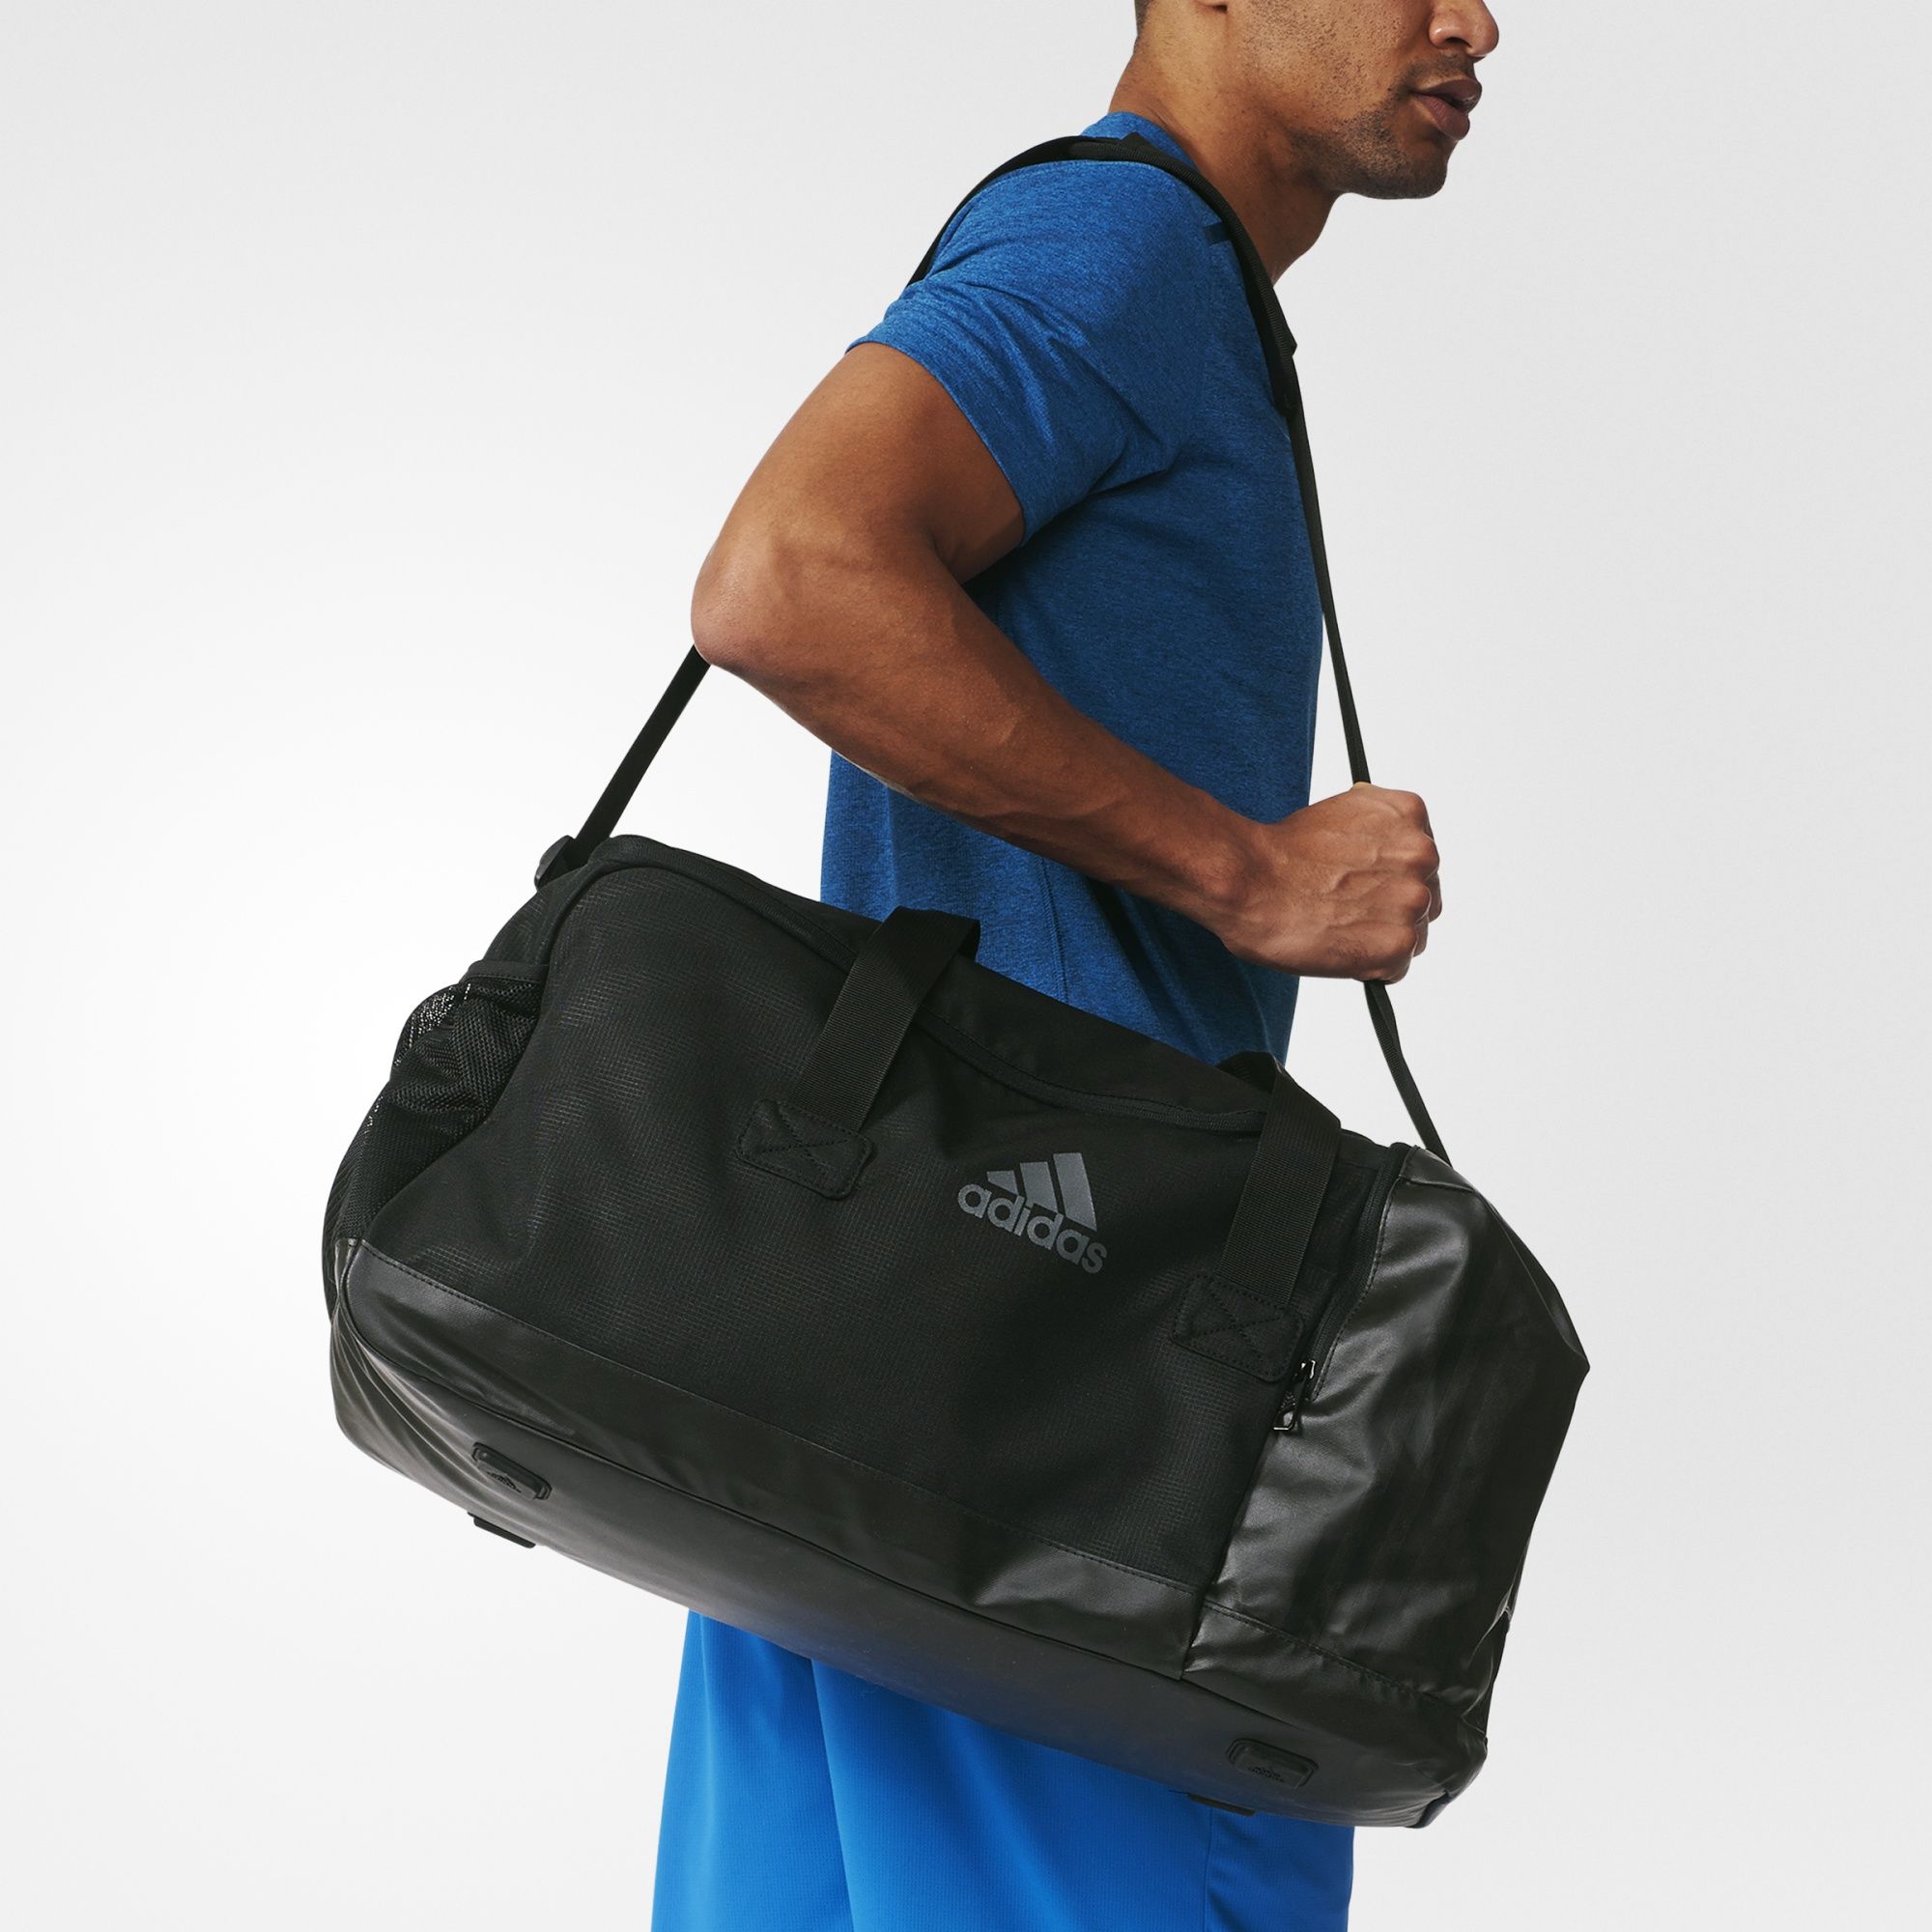 Со спортивной сумкой. Сумка adidas 3-Stripes aj9993. Спортивная сумка адидас перфоманс. Мужчина со спортивной сумкой. Сумка спортивная мужская для тренировок.